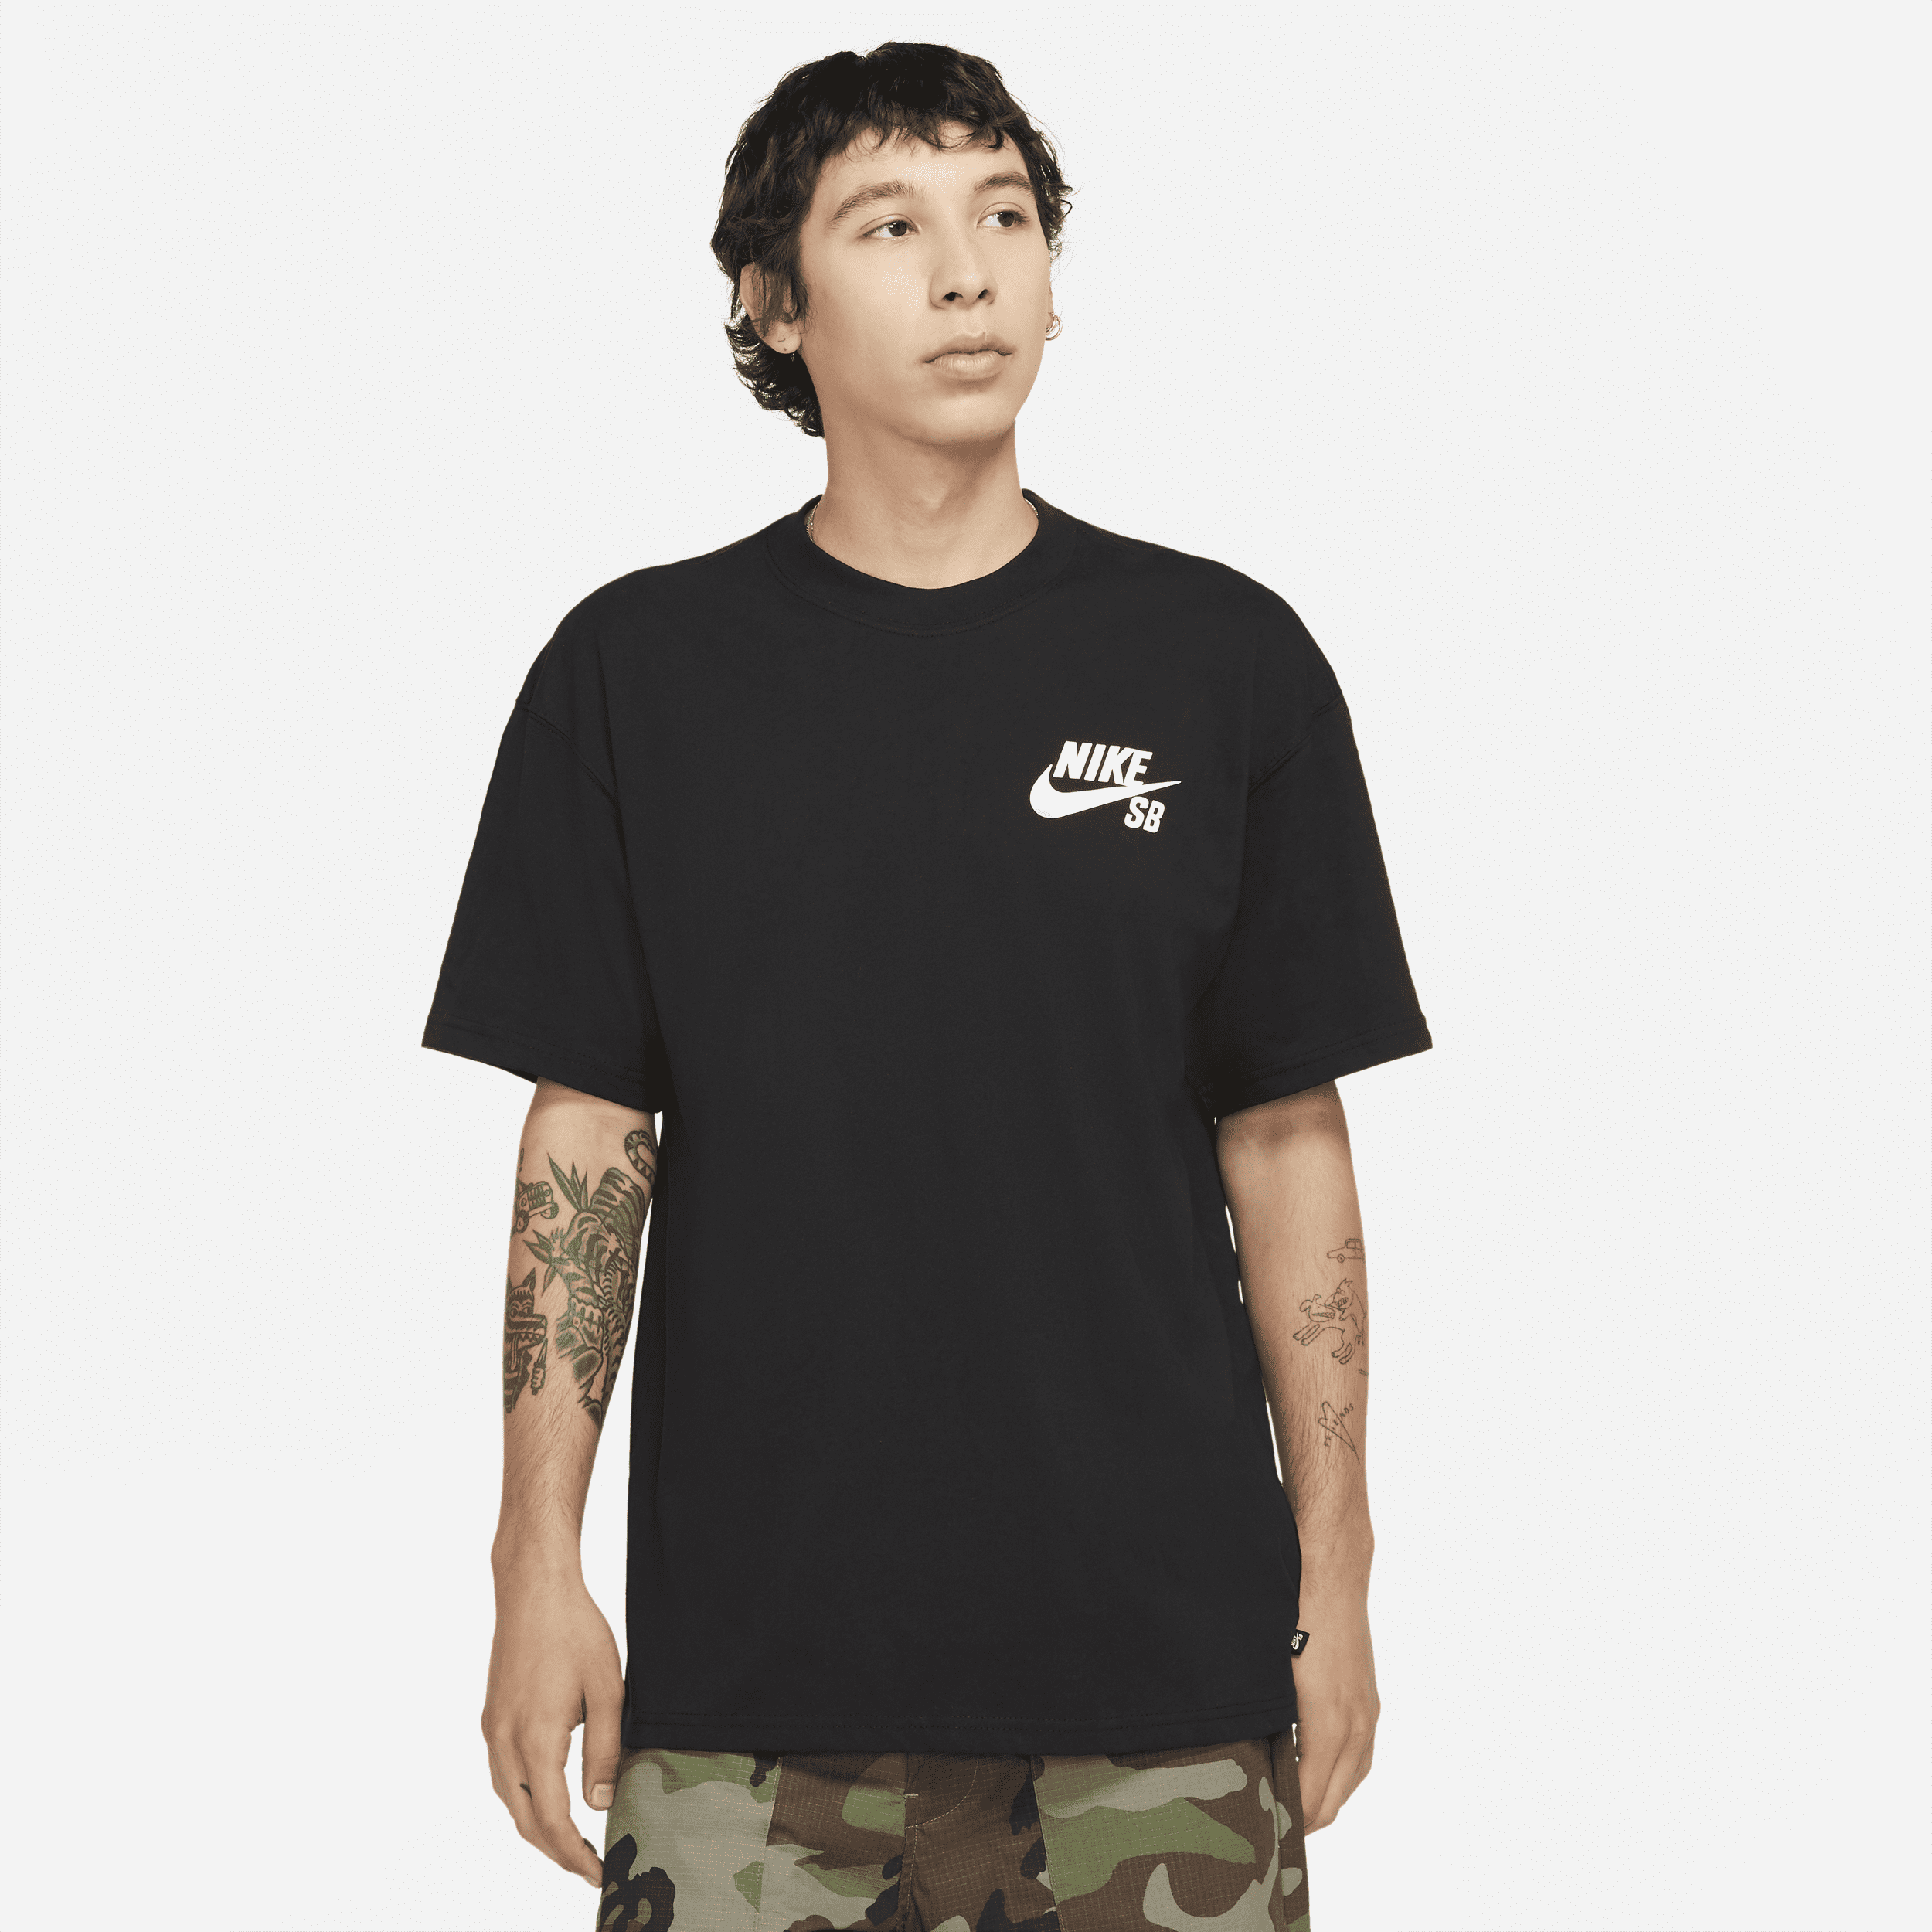 Nike SB Skateshirt met logo - Zwart